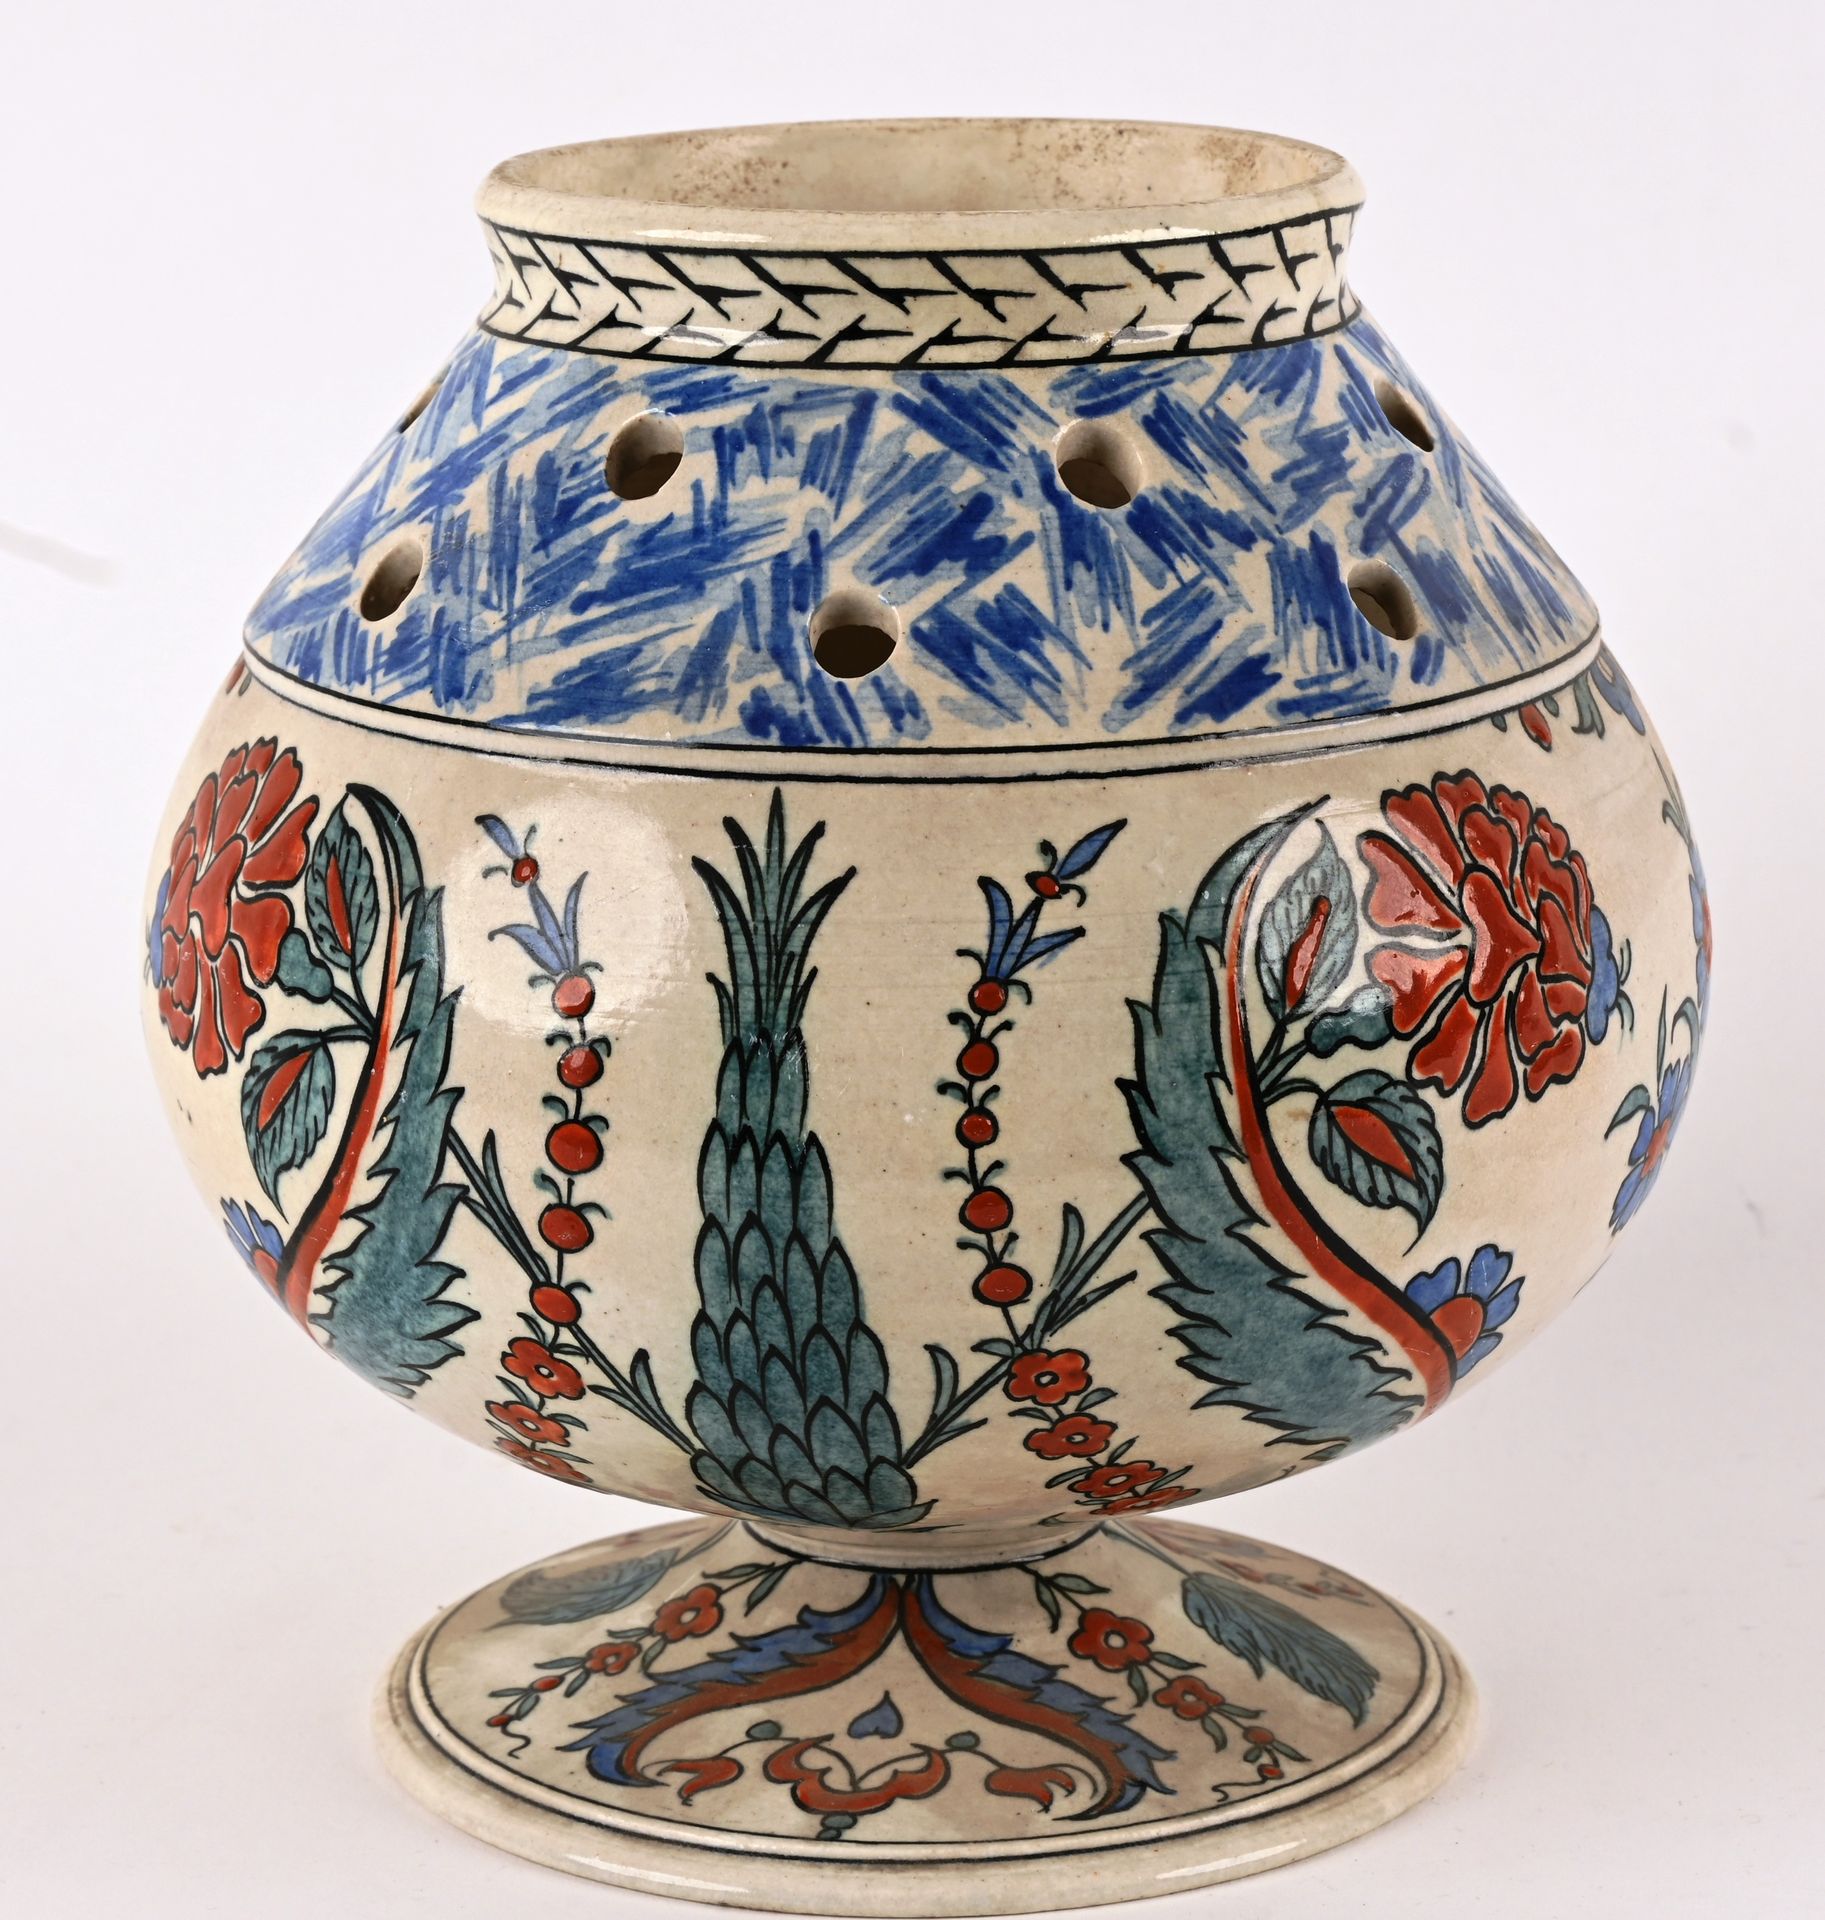 SAMSON vase dans le goût Iznik 19世纪下半叶的SAMSON
伊兹尼克风格的多色陶瓷花瓶，顶部有穿孔 高：19厘米 底下有签名